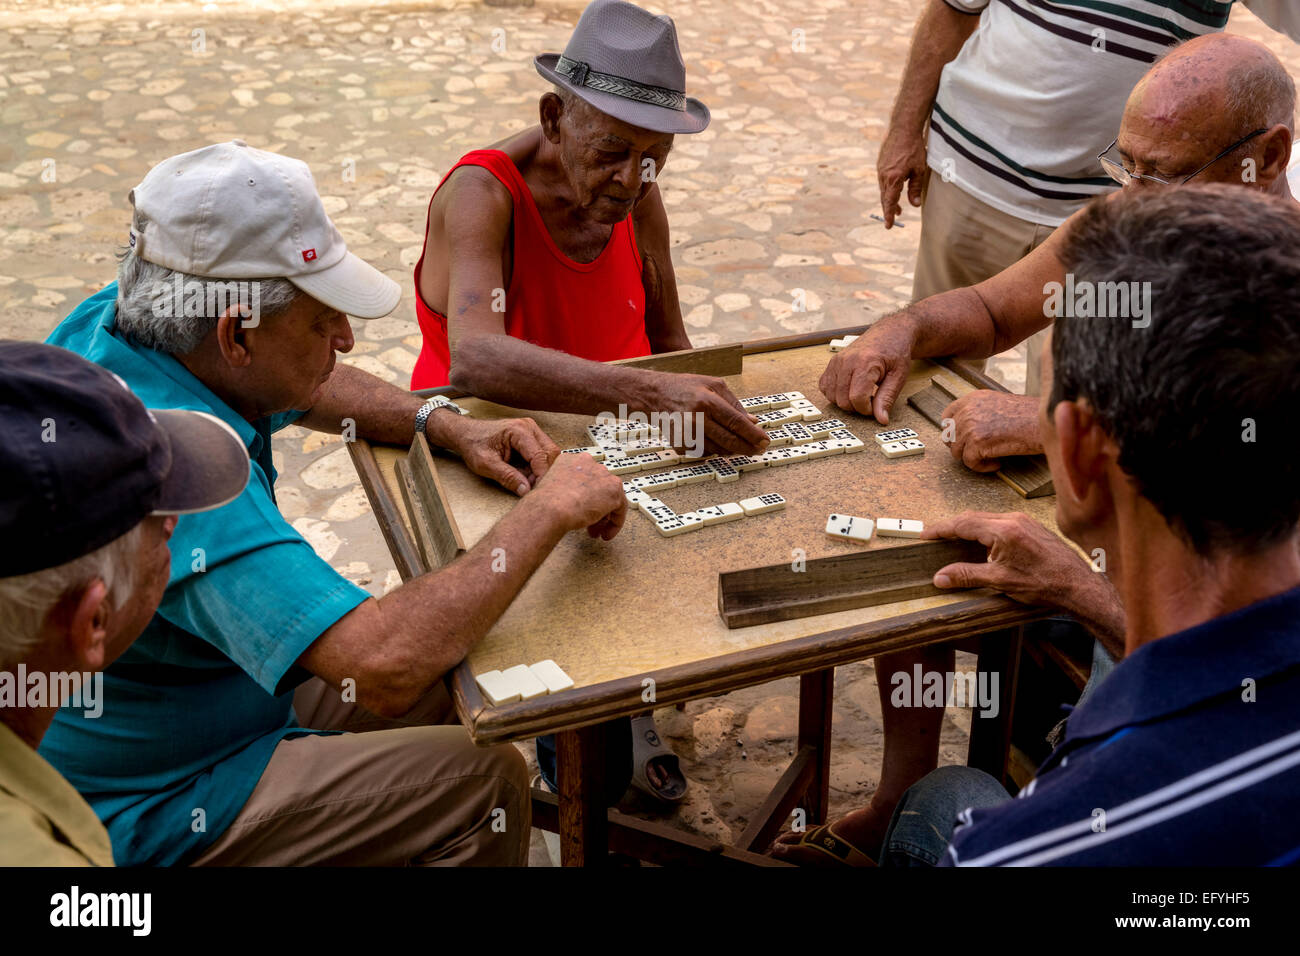 Les hommes cubains jouer aux dominos sur une table à l'extérieur, la vieille ville, la Trinité, la province de Sancti Spiritus, Cuba Banque D'Images